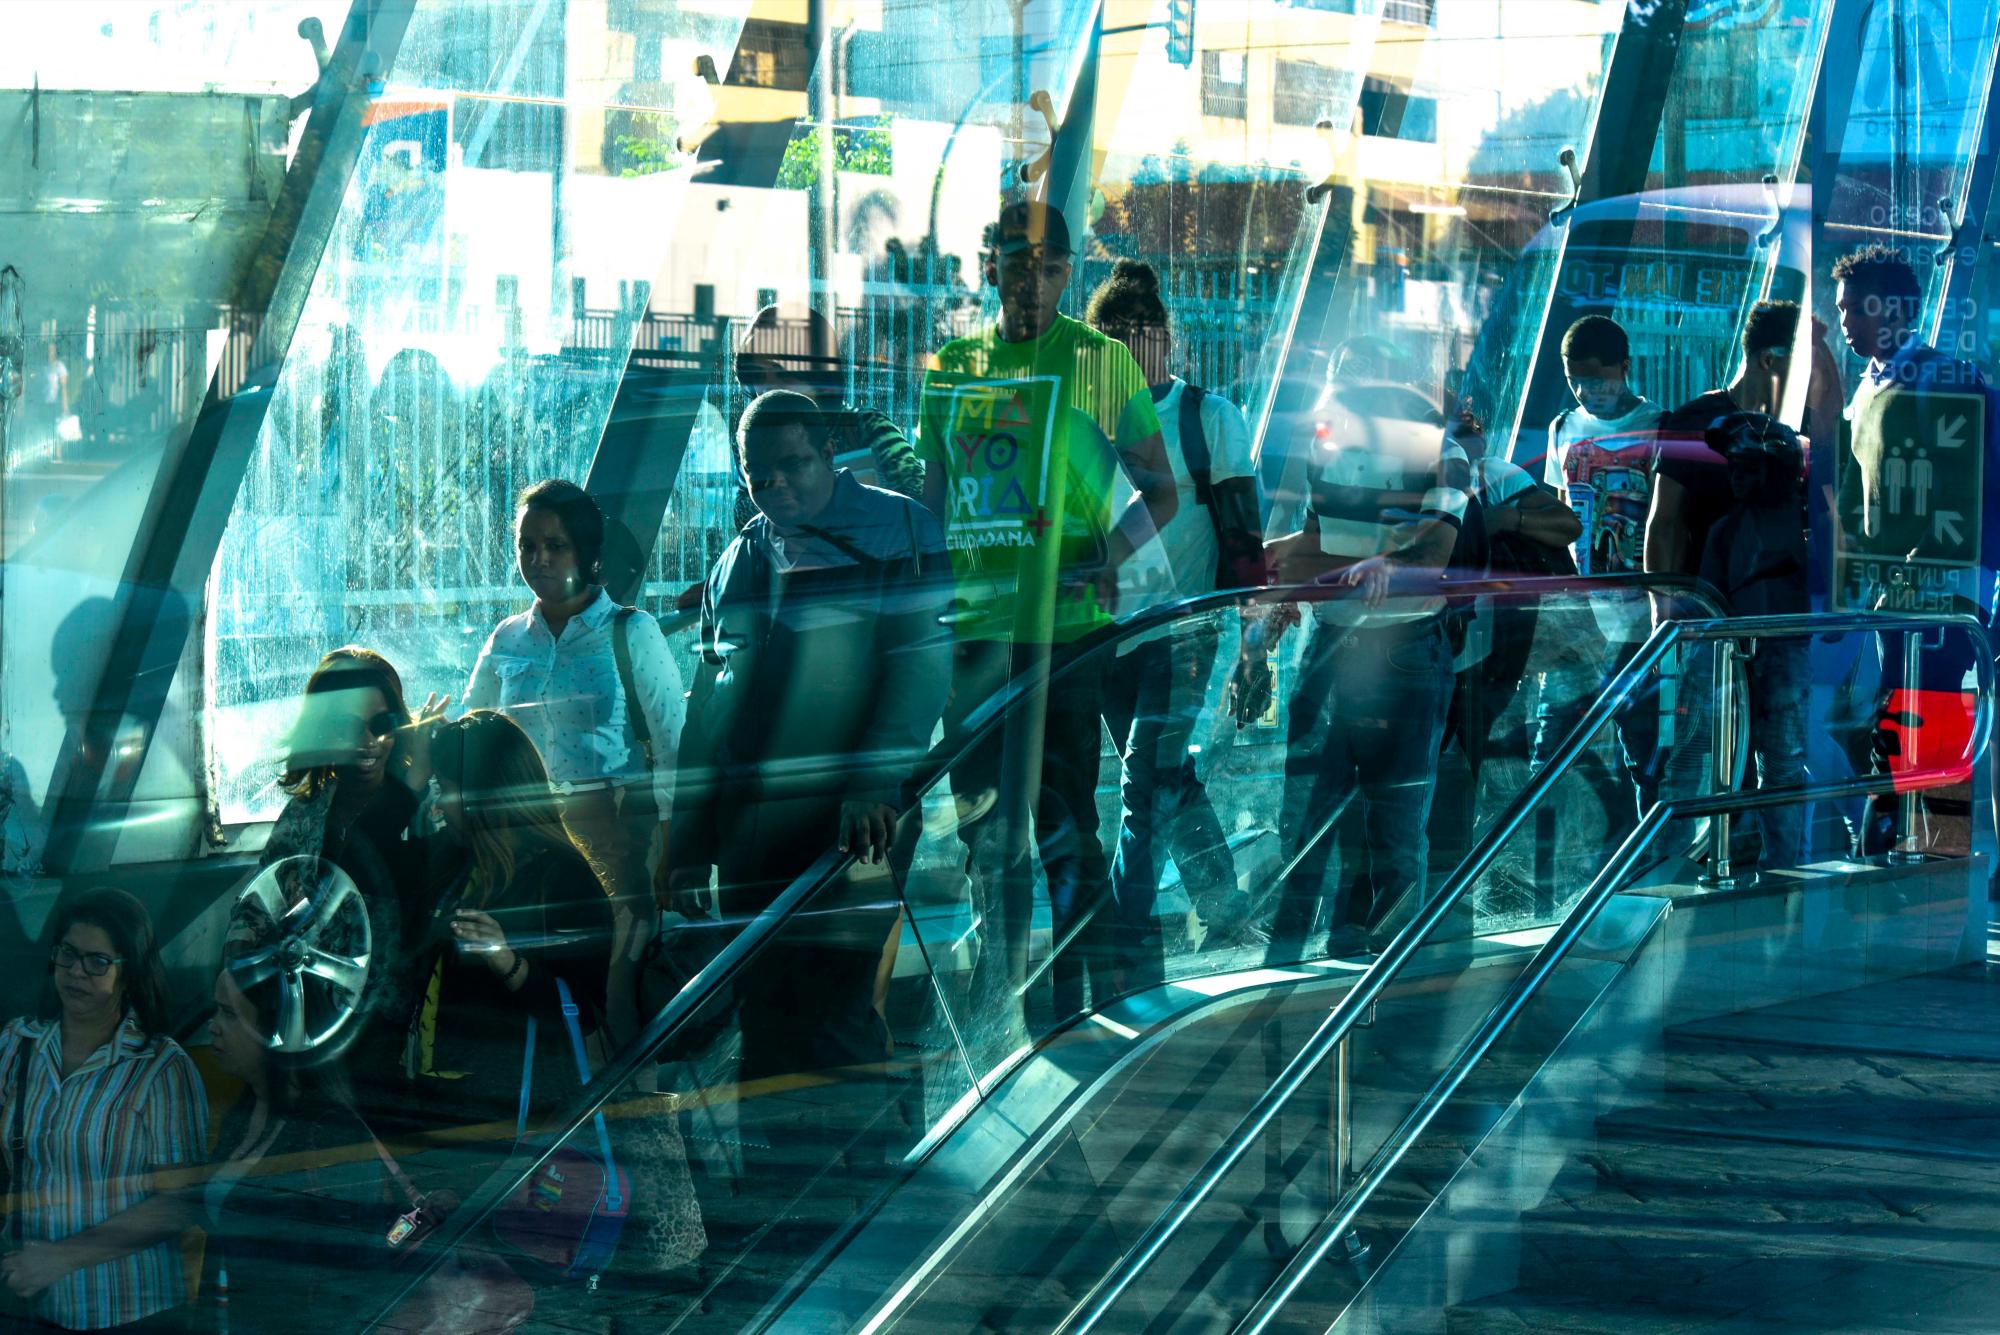 Usuarios del Metro de Santo Domingo bajan por una escalera eléctrica en la estación Centro de los Héroes, sector La Feria en el Distrito Nacional. Domingo 17 de marzo de 2019.